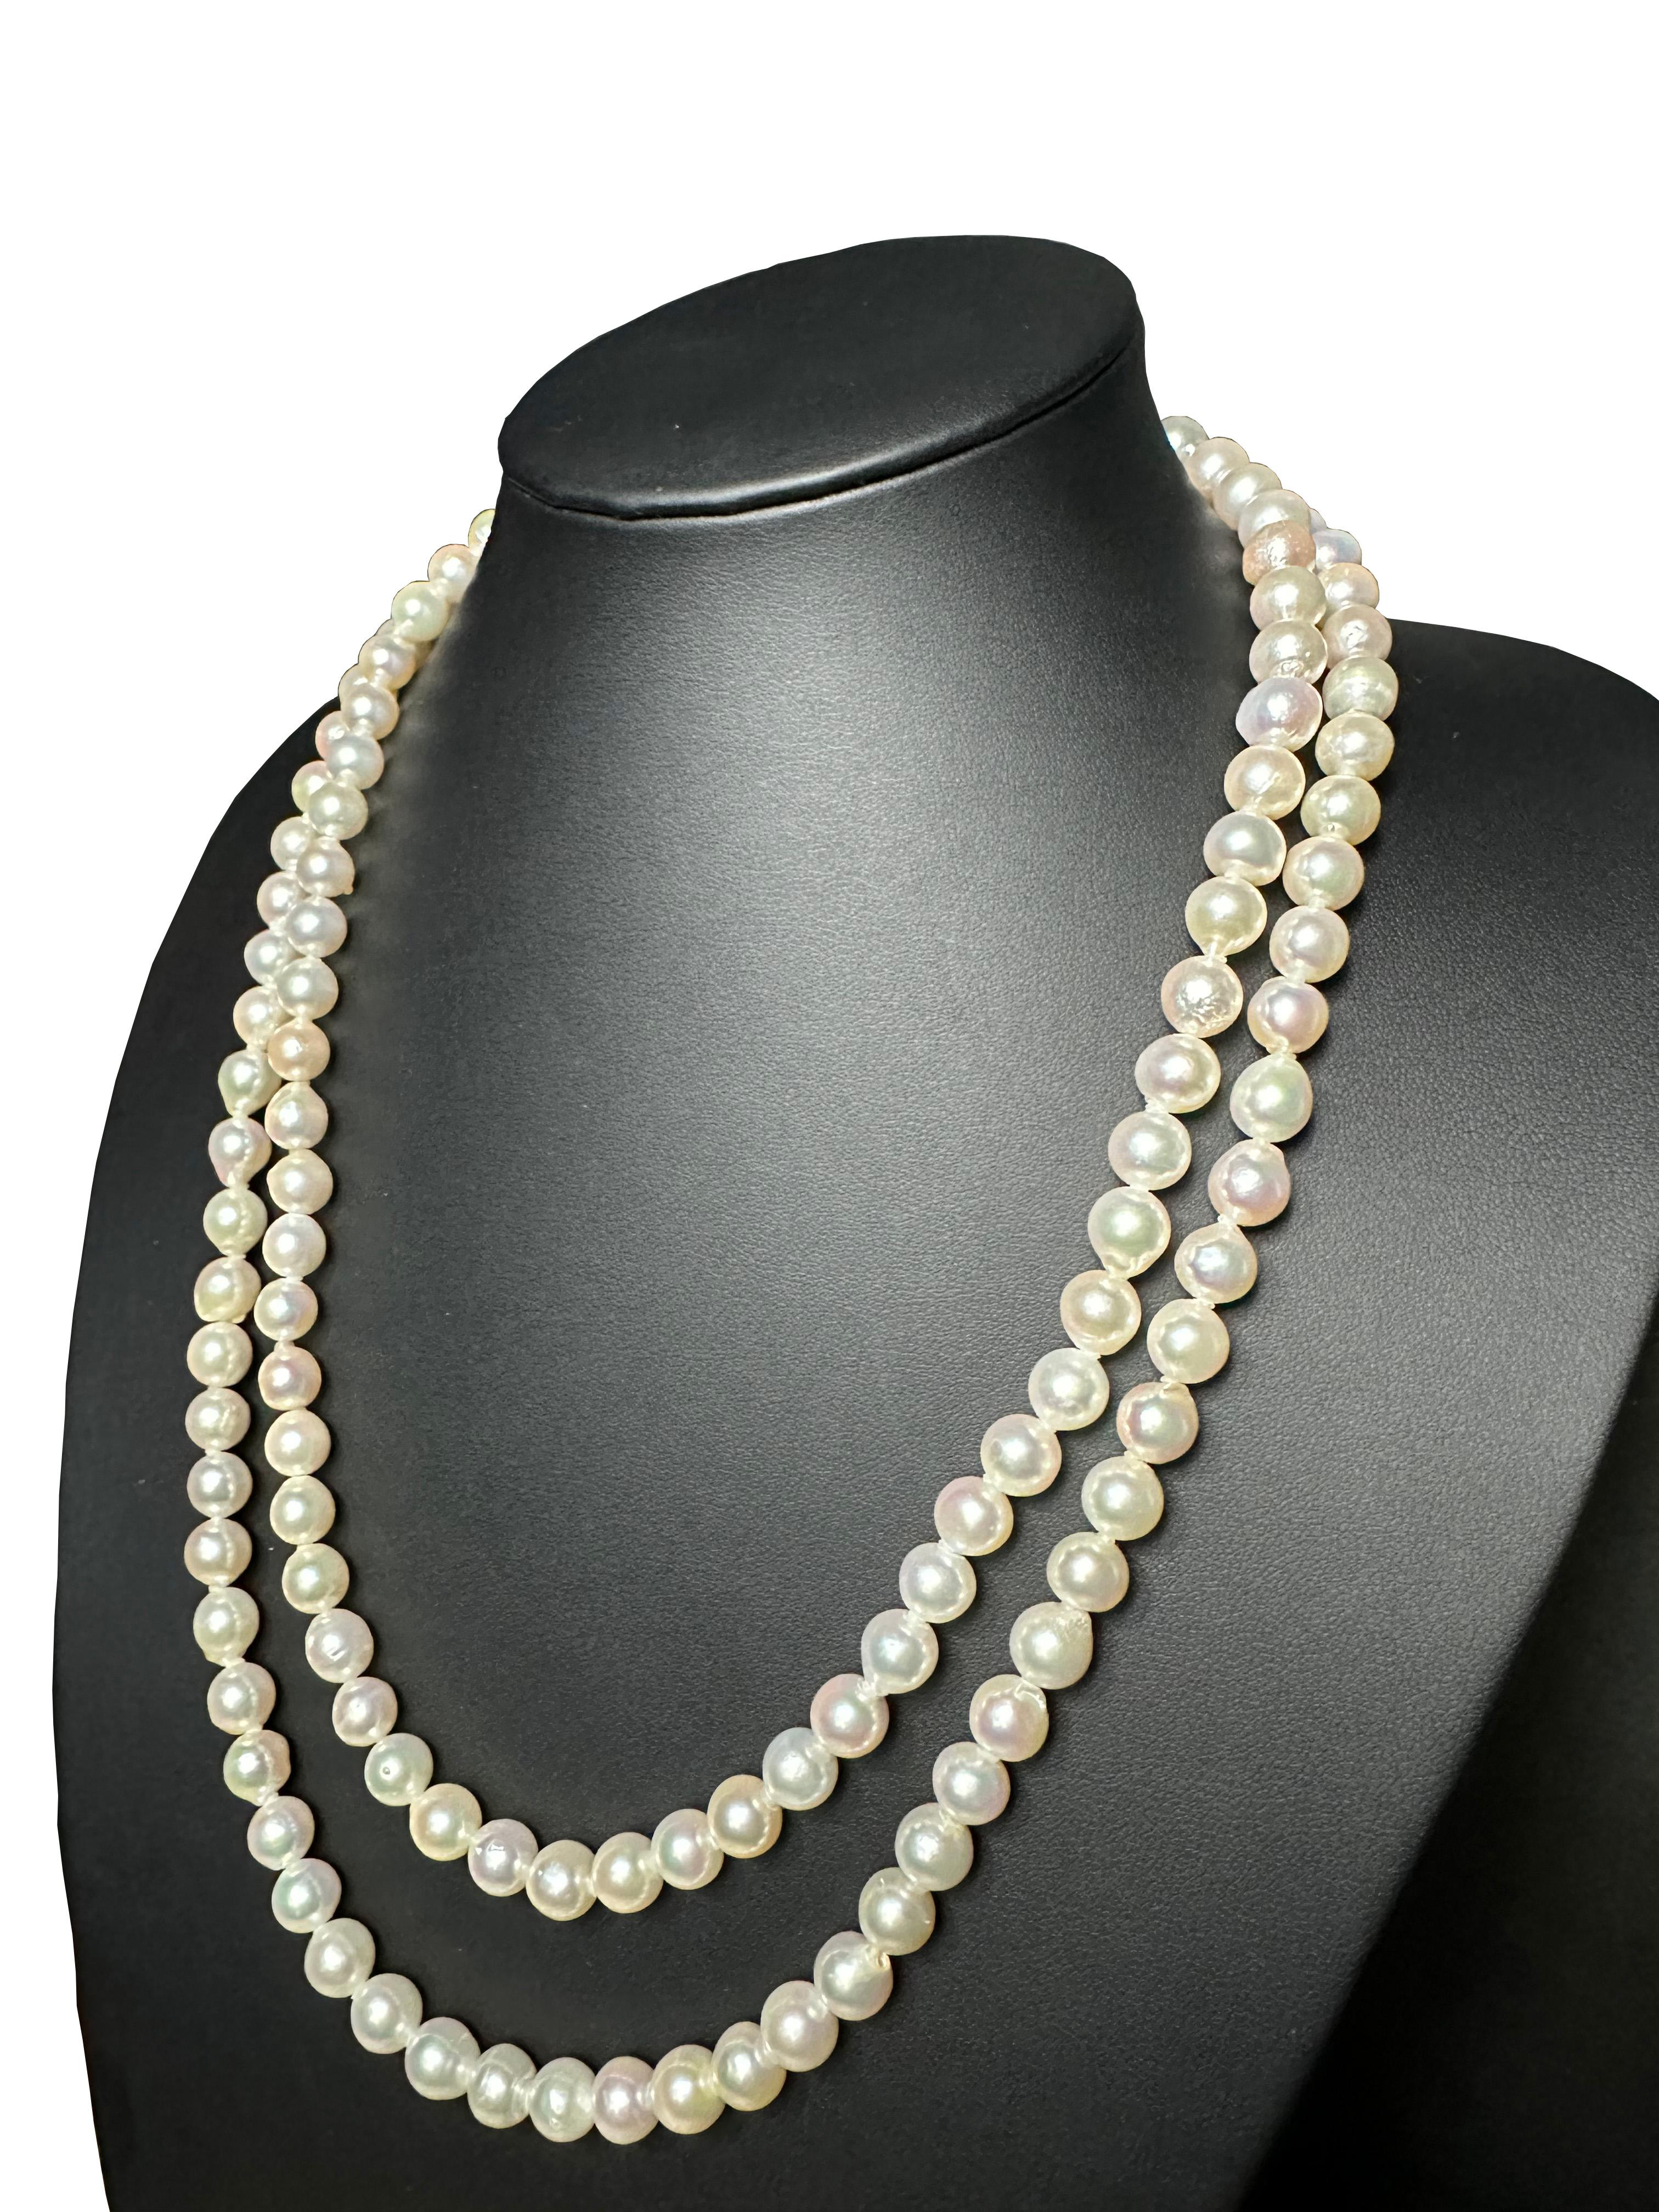 Schöpfer: IRIS PARURE
Perlenfarm: Ehime, Uwajima, JAPAN
Eigenschaften:Nicht gefärbt und nicht gebleicht, BENI AKOYA®
Größe der Perle: 8.5mm-9.00mm
Anzahl der Perlen: 134

 IRIS PARURE stellt seit ihrer Gründung im Jahr 1953 Perlenschmuck von